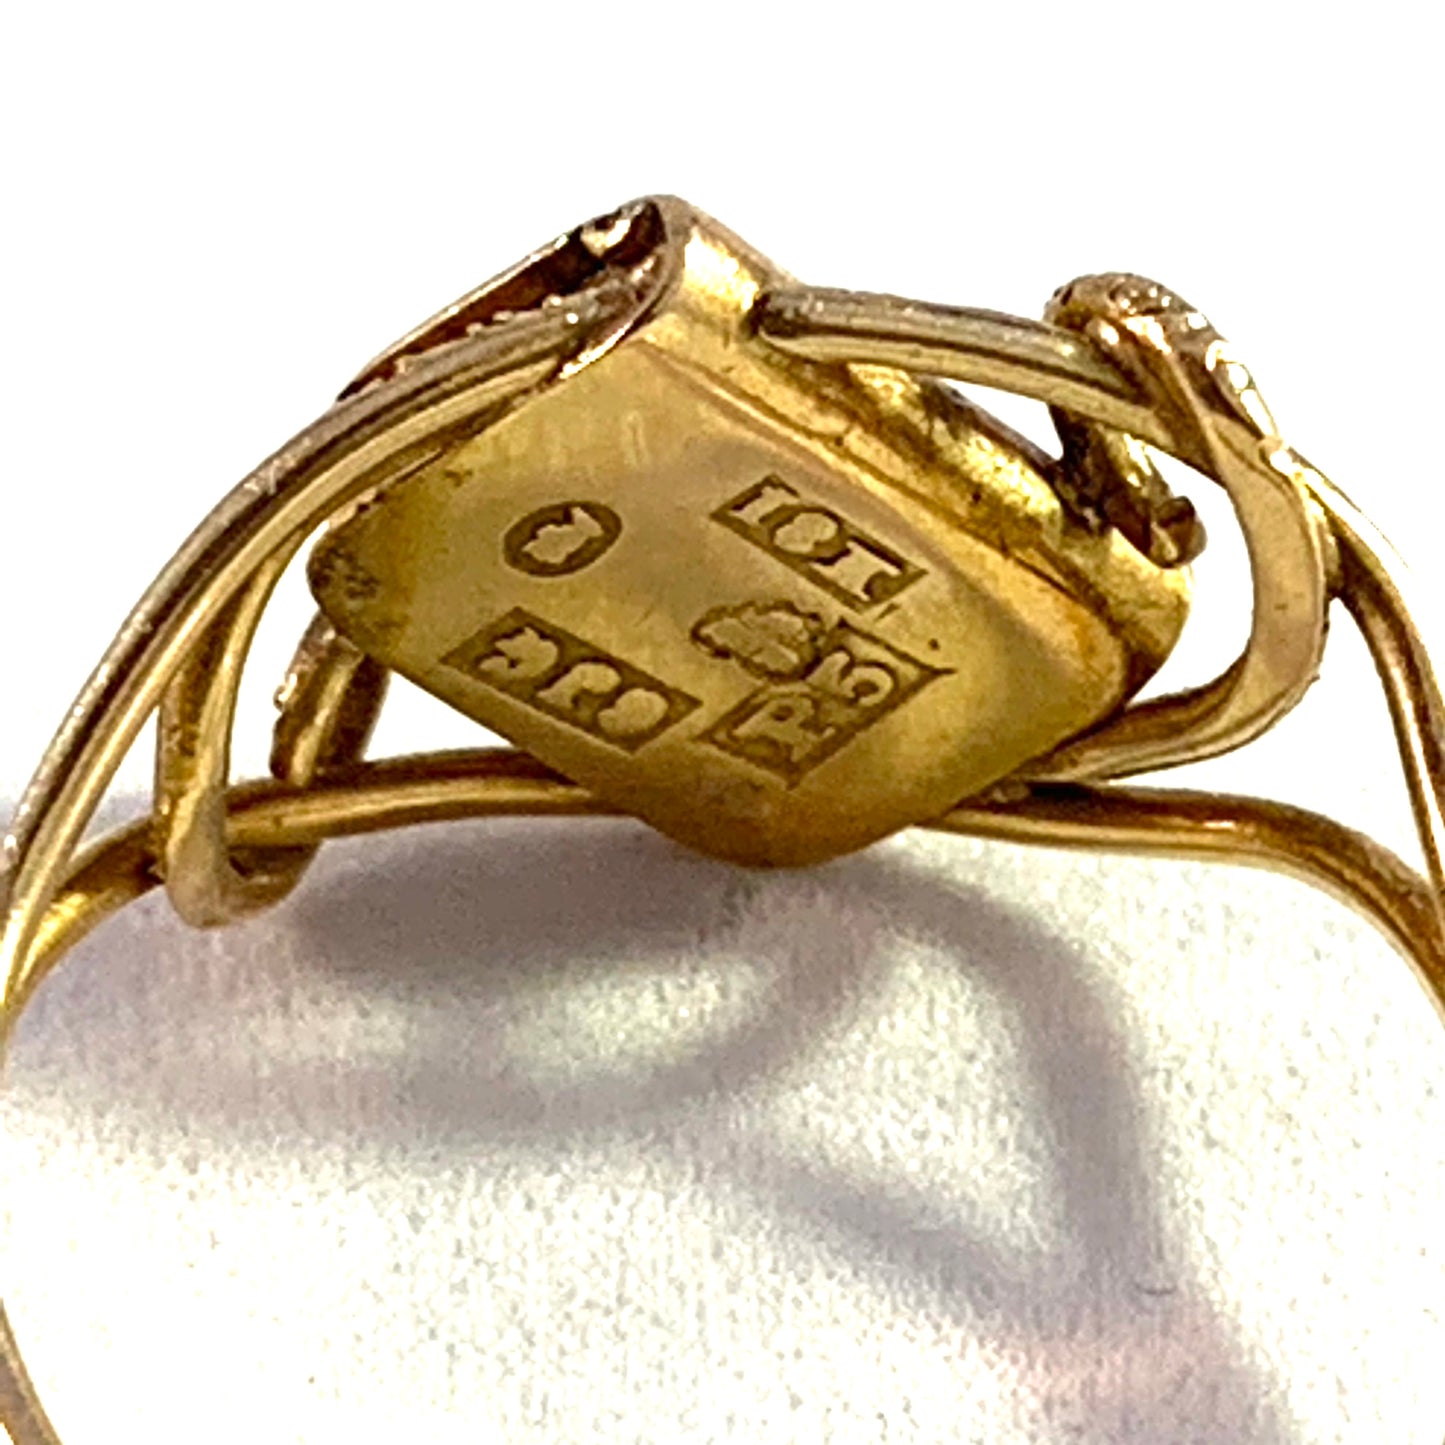 C.JG Stockholm 1869 Victorian 18k Gold Poison Ring.